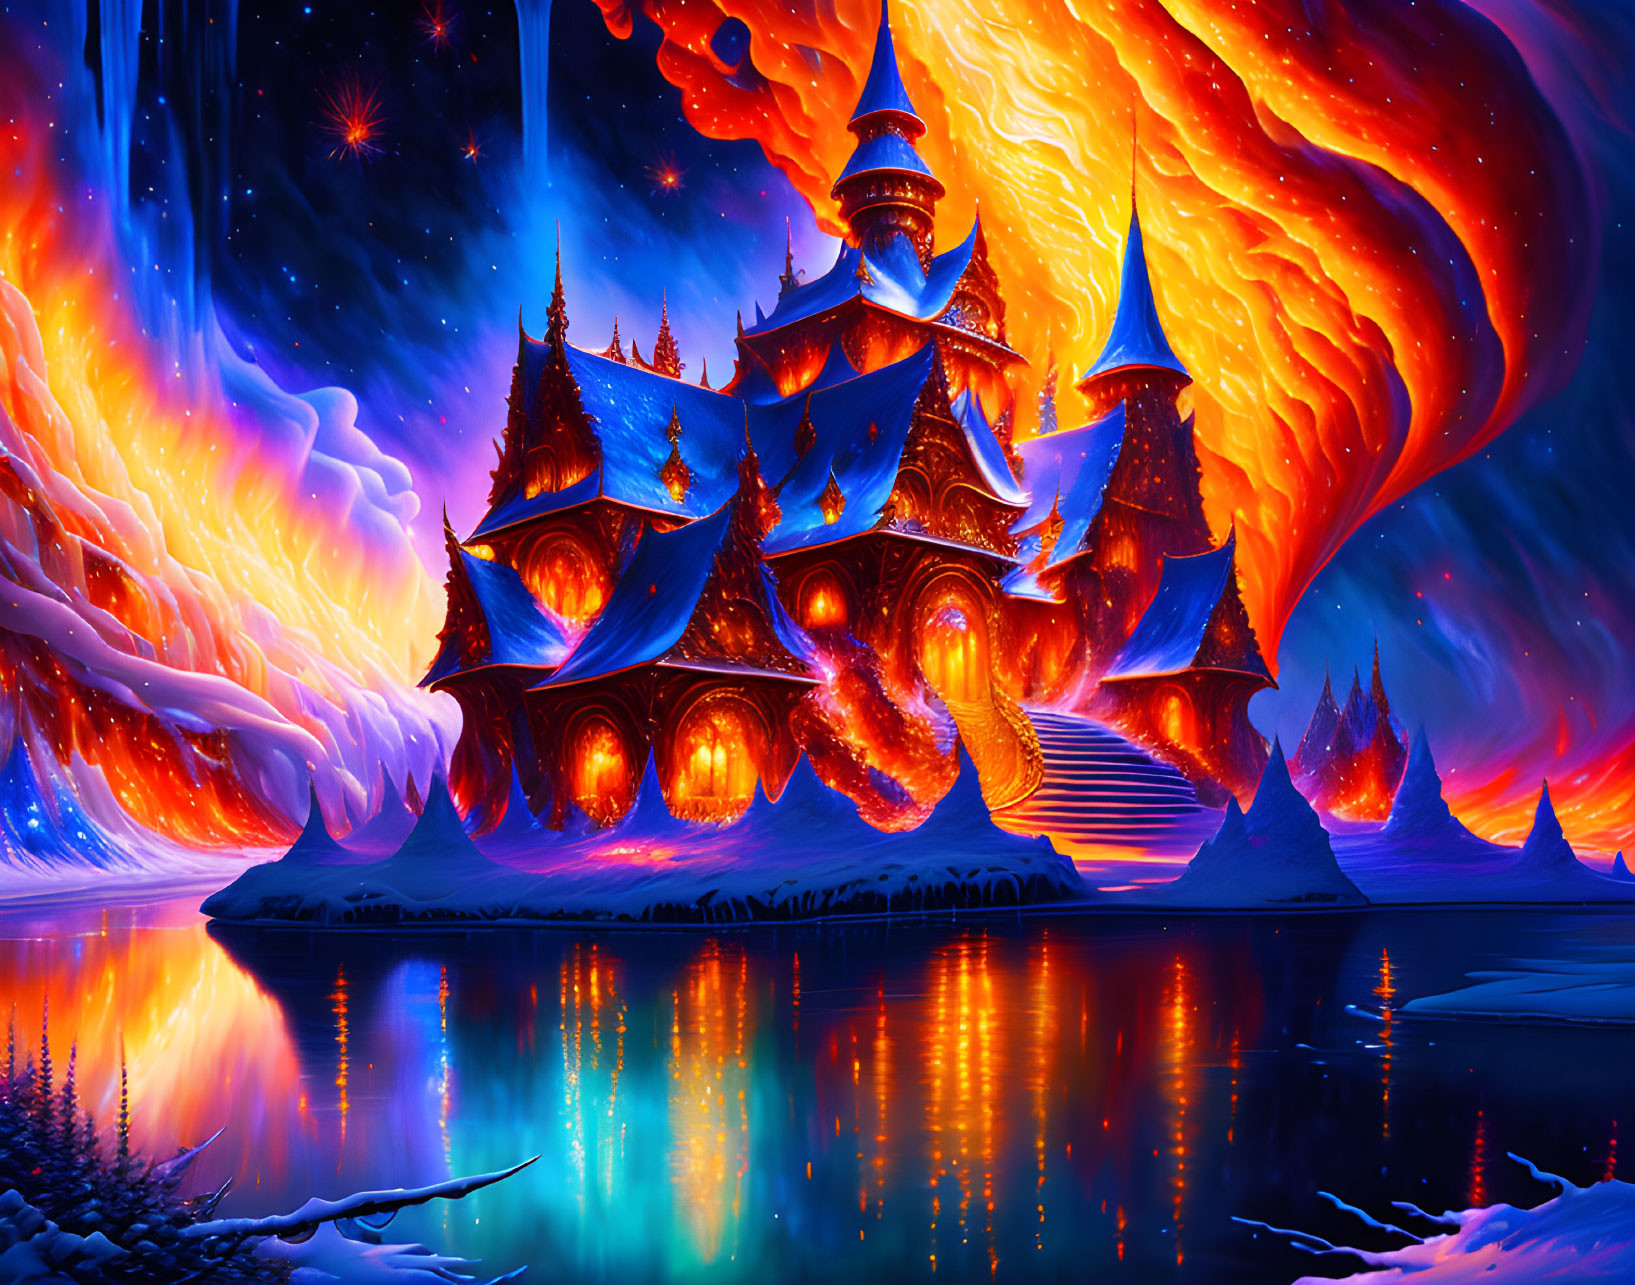 Castle on fire